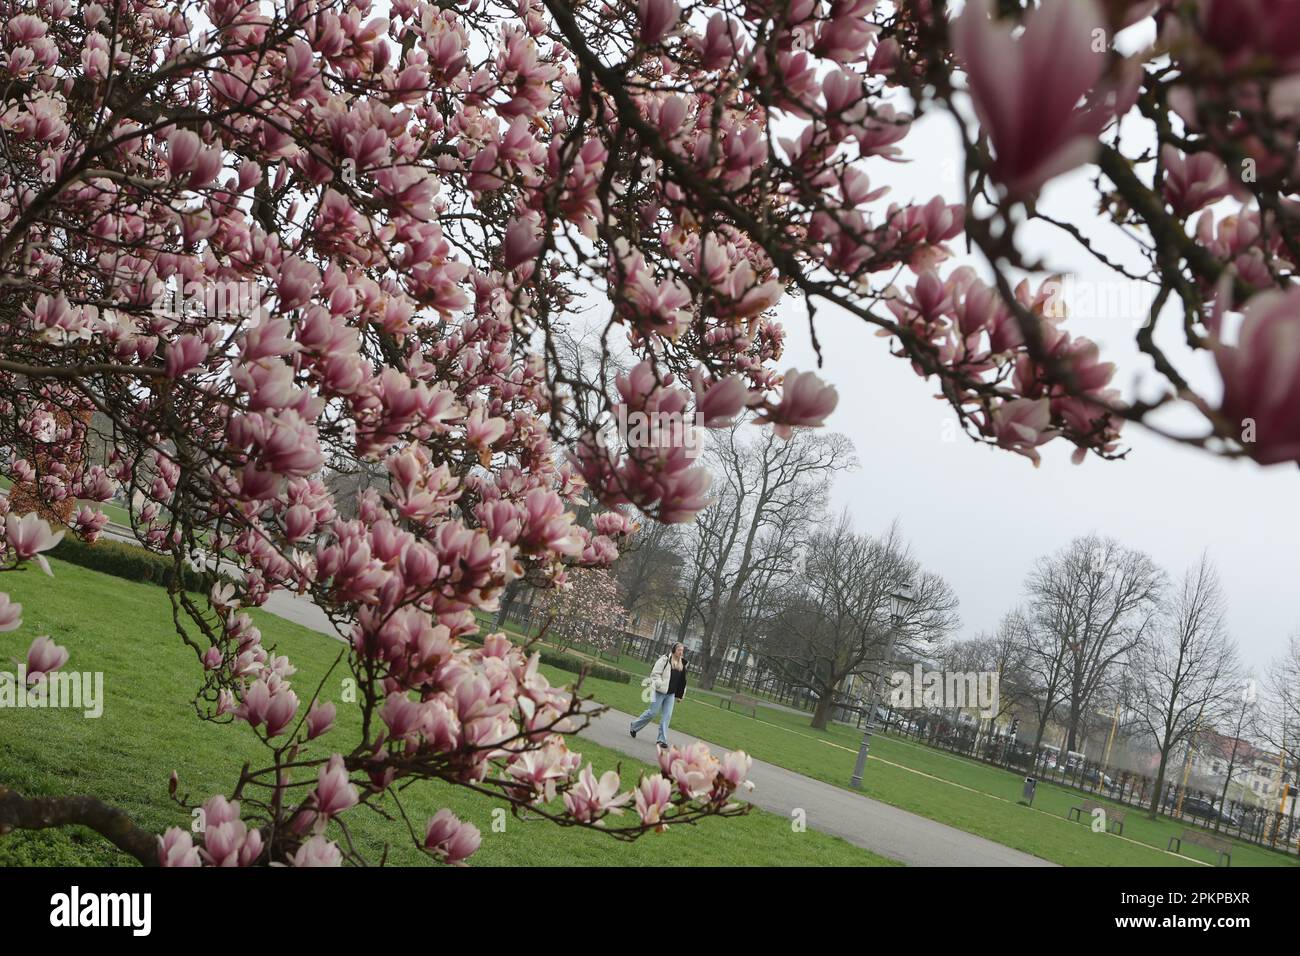 Gera, Deutschland. 09. April 2023. Ein Magnolienbaum blüht im Küchengarten. Magnolien sind eine Pflanzengattung in der Magnolienfamilie. Kredit: Bodo Schackow/dpa/Alamy Live News Stockfoto